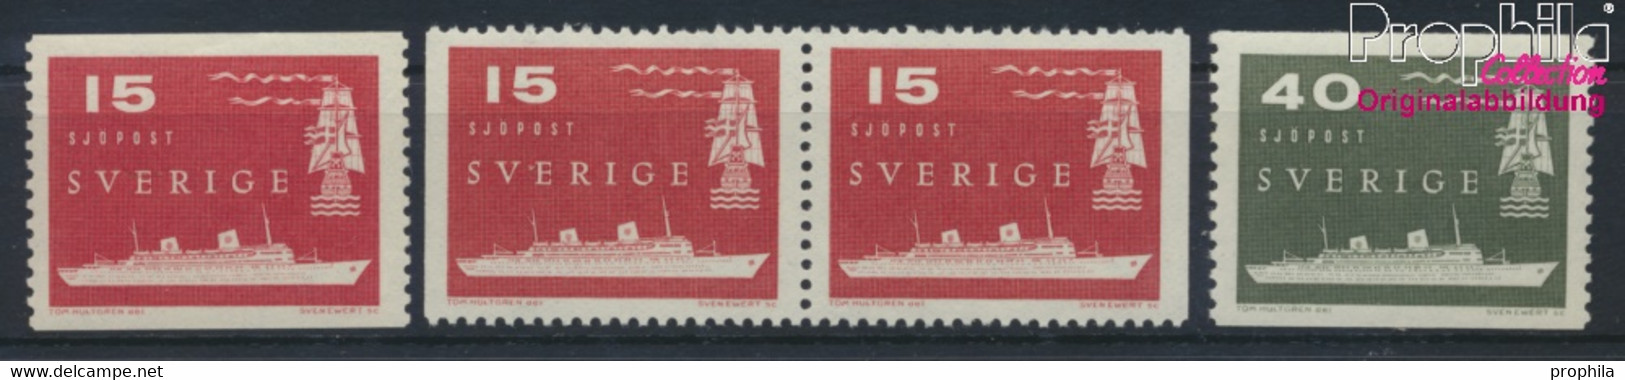 Schweden 436A,Dl,Dr,437A (kompl.Ausg.) Postfrisch 1958 Seepost (9949296 - Unused Stamps